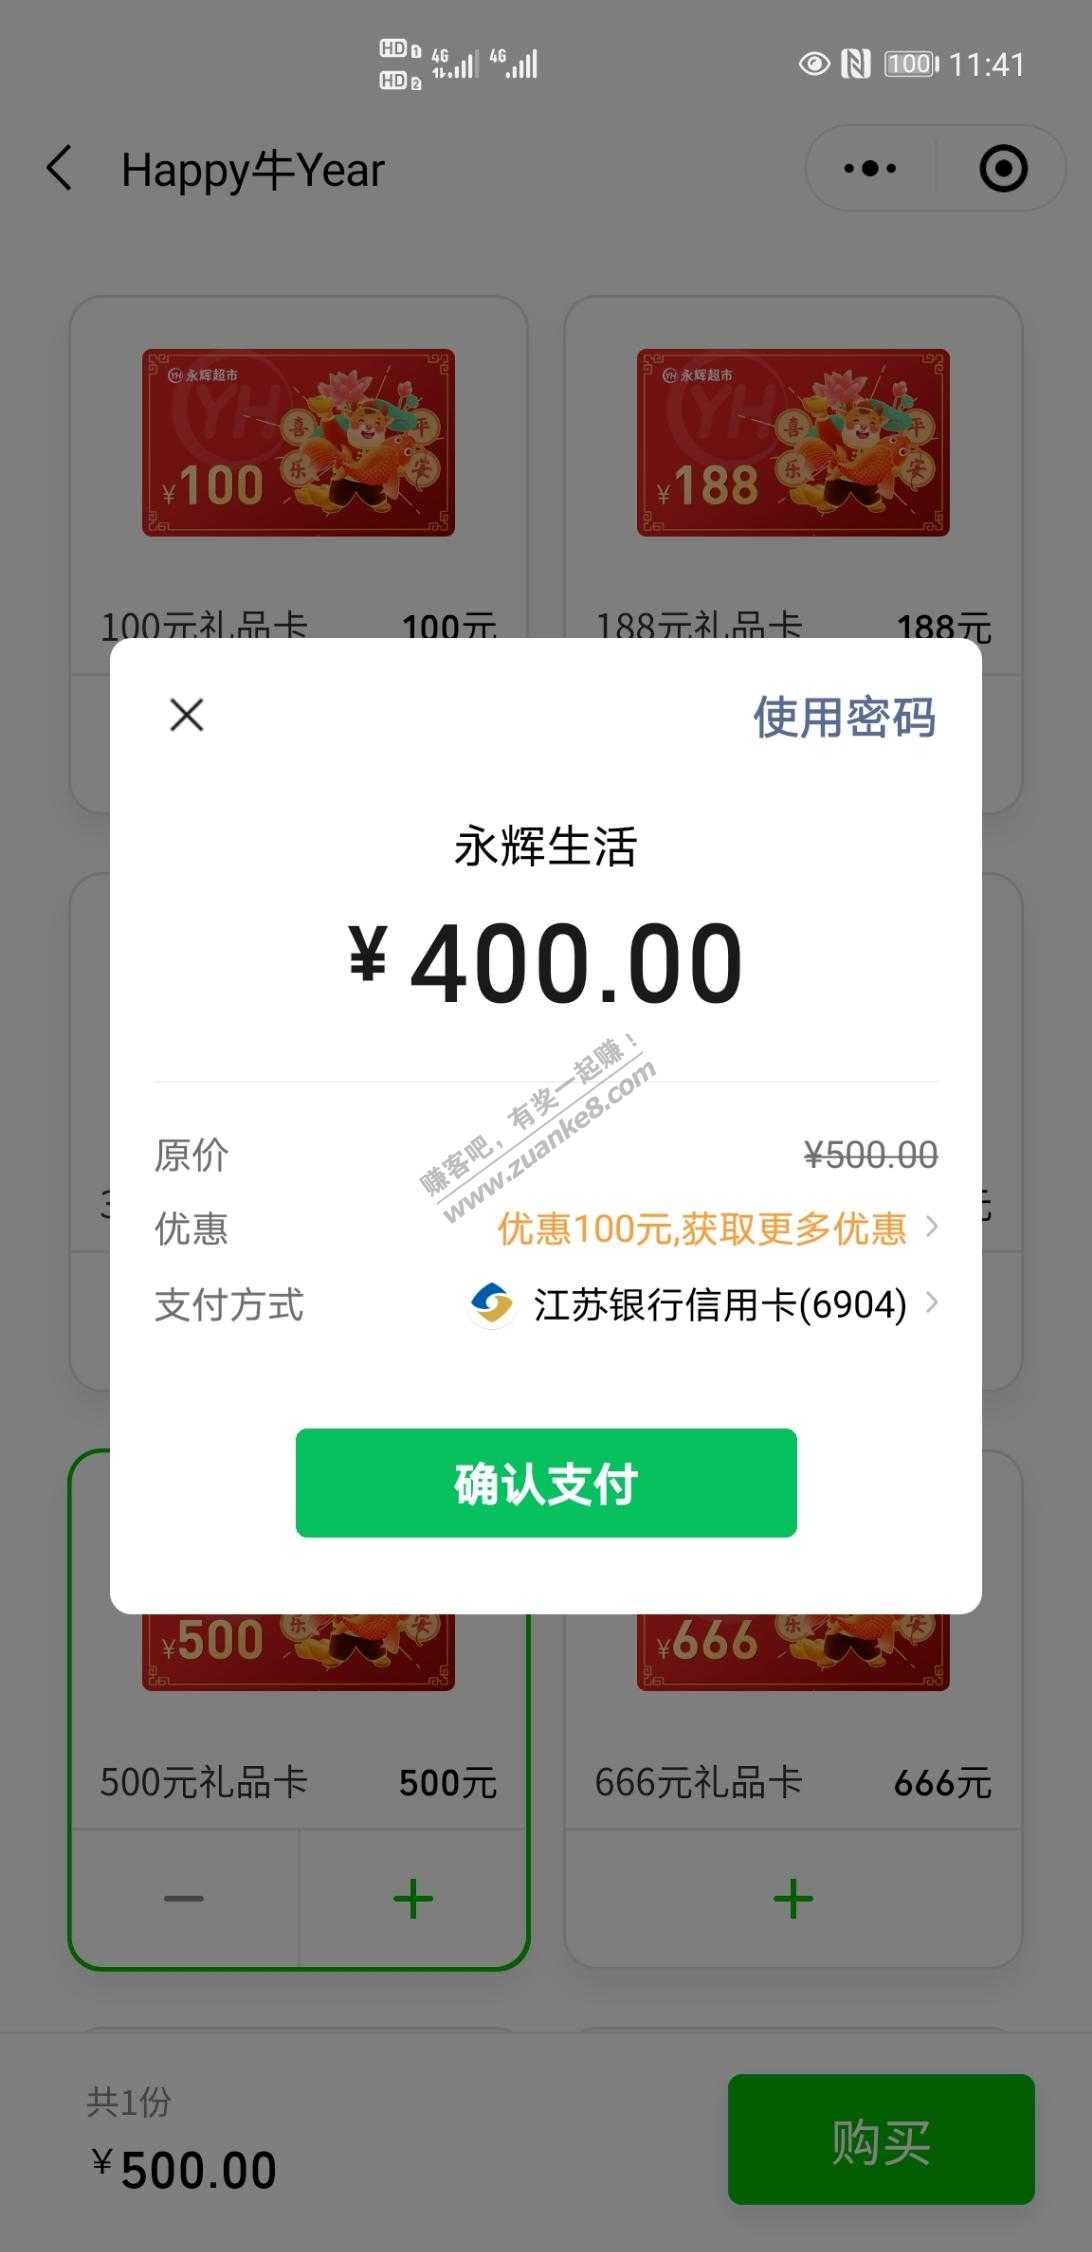 分享一下我个人微信t用深圳消费券400-100-惠小助(52huixz.com)